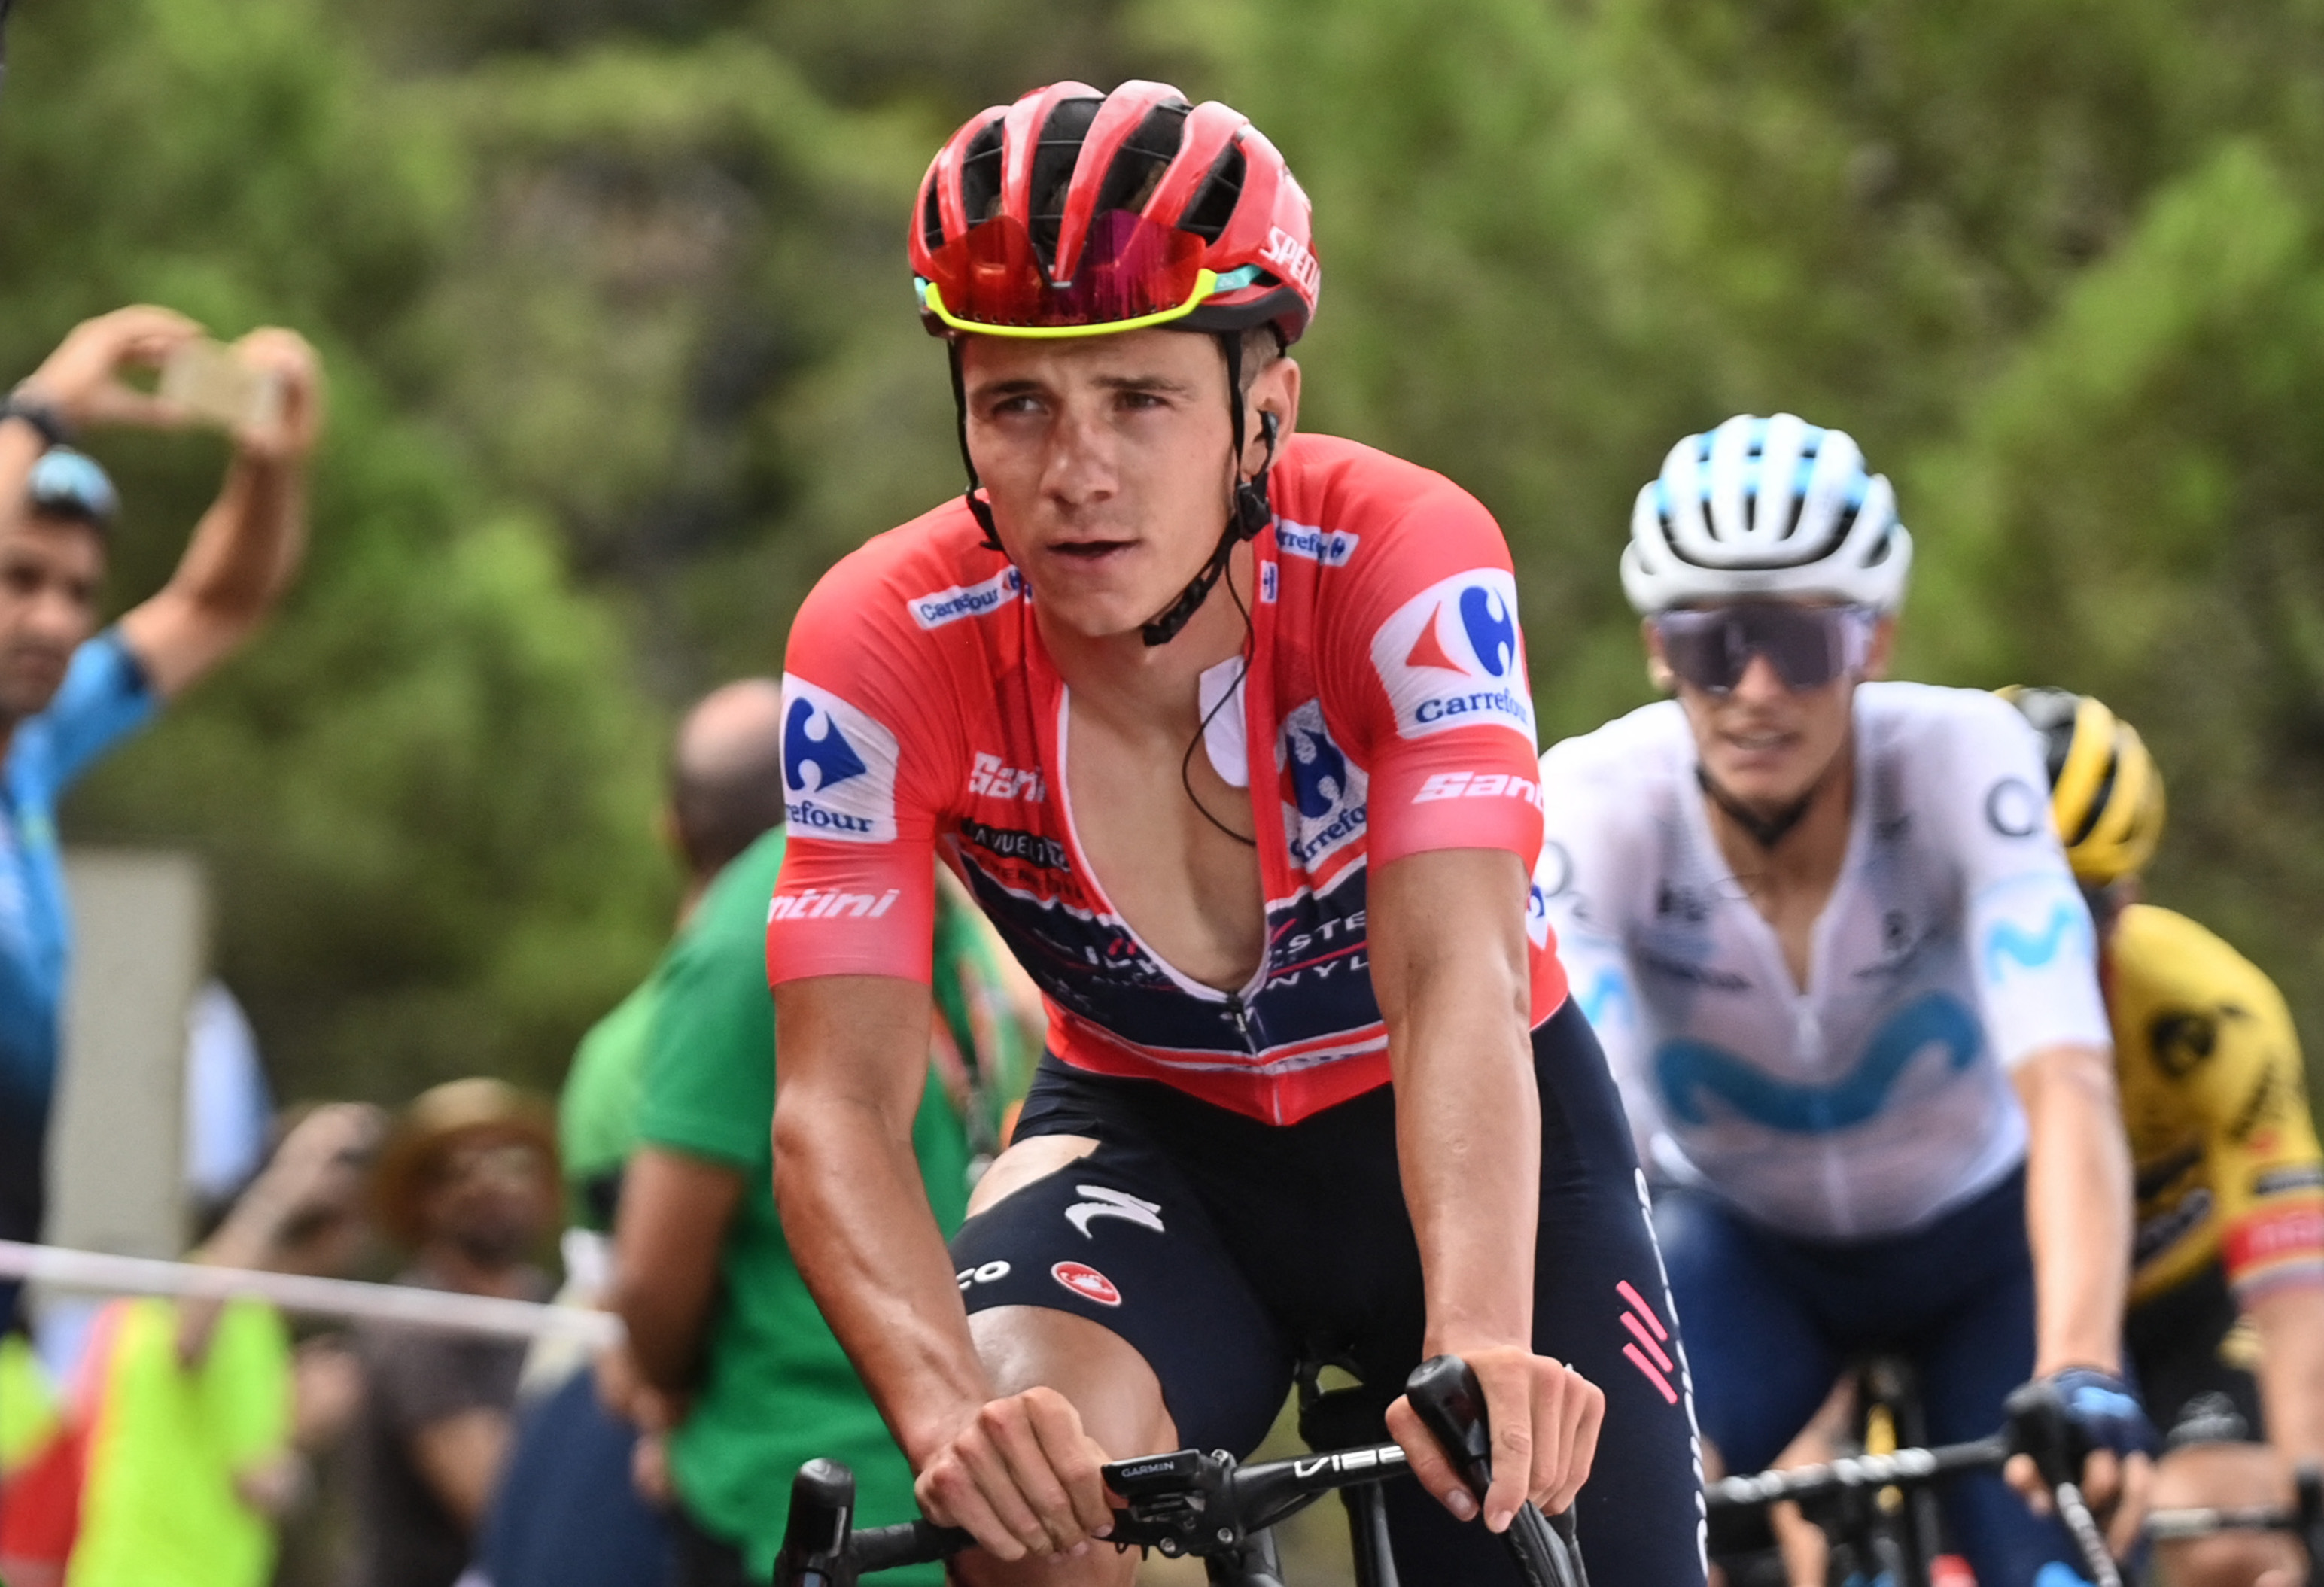 Remco Evenepoel in the Vuelta a Espana leader's jersey